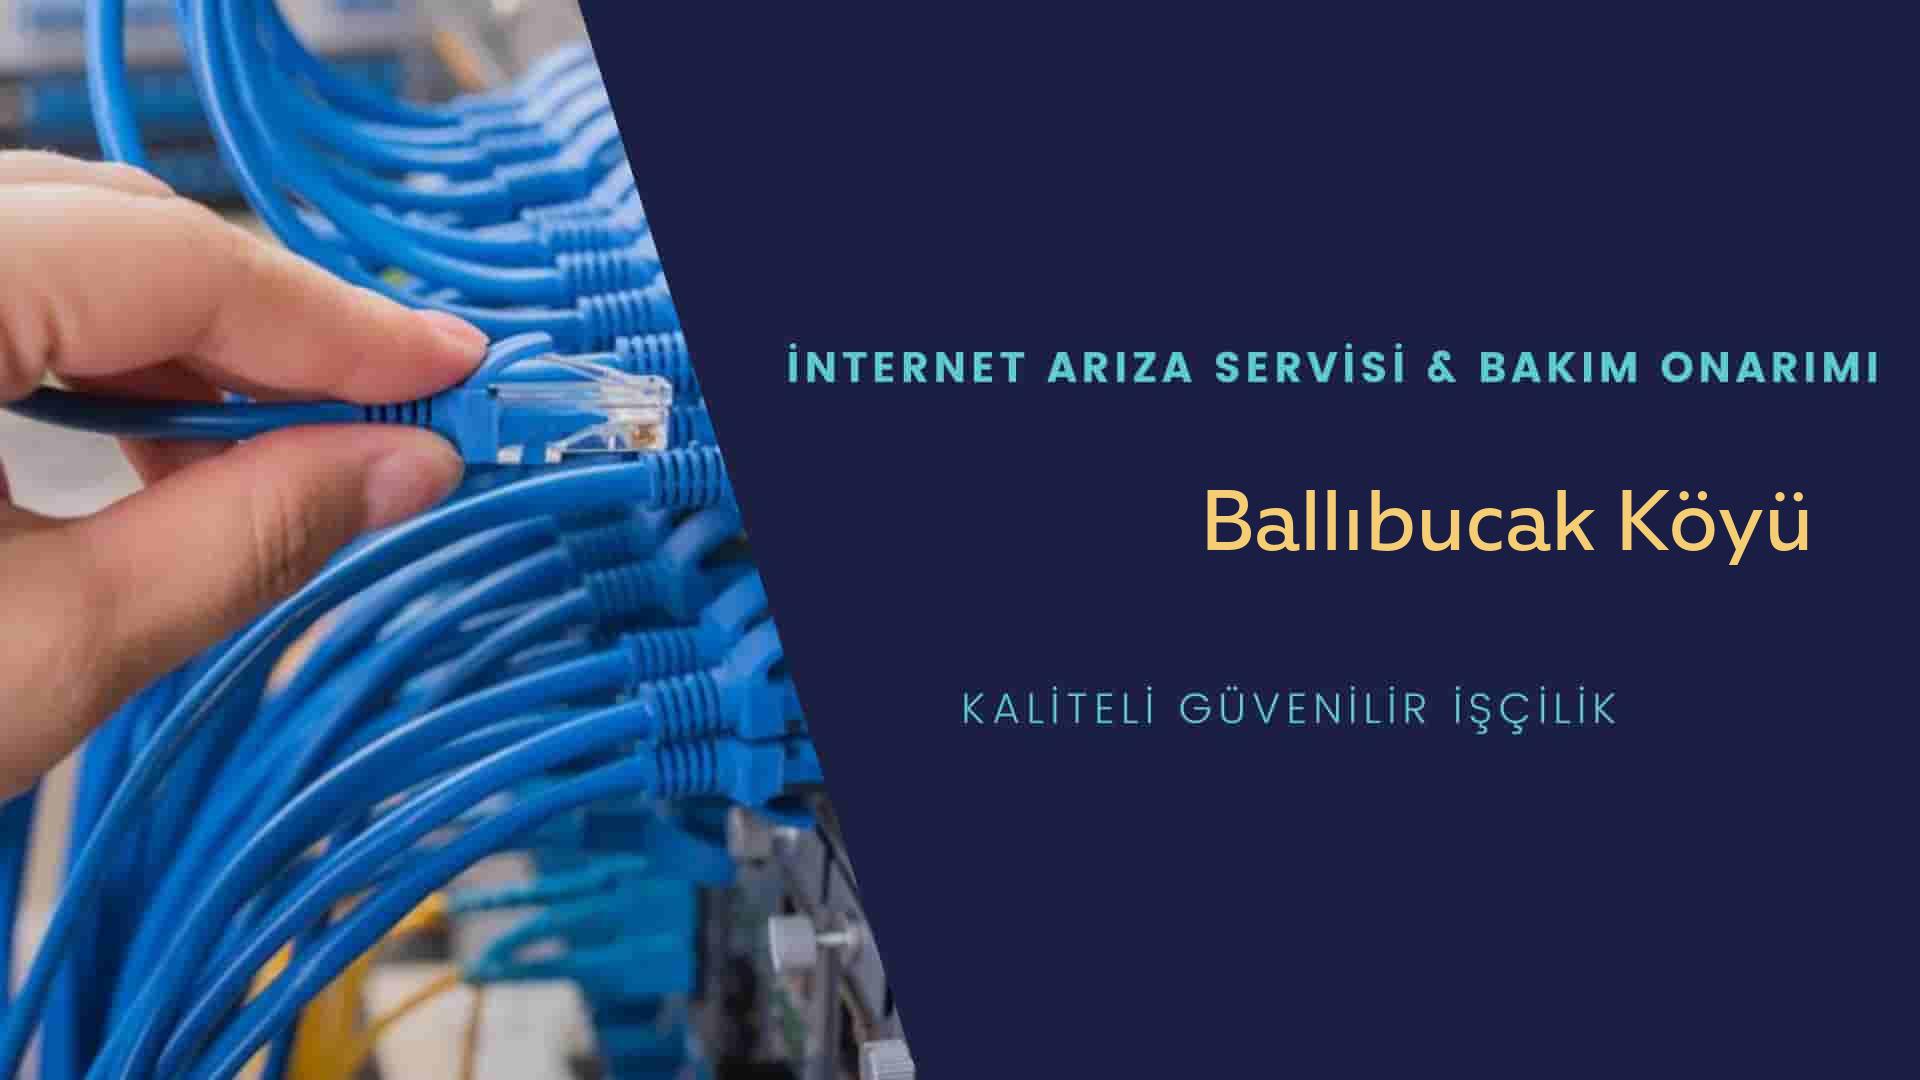 Ballıbucak Köyü internet kablosu çekimi yapan yerler veya elektrikçiler mi? arıyorsunuz doğru yerdesiniz o zaman sizlere 7/24 yardımcı olacak profesyonel ustalarımız bir telefon kadar yakındır size.